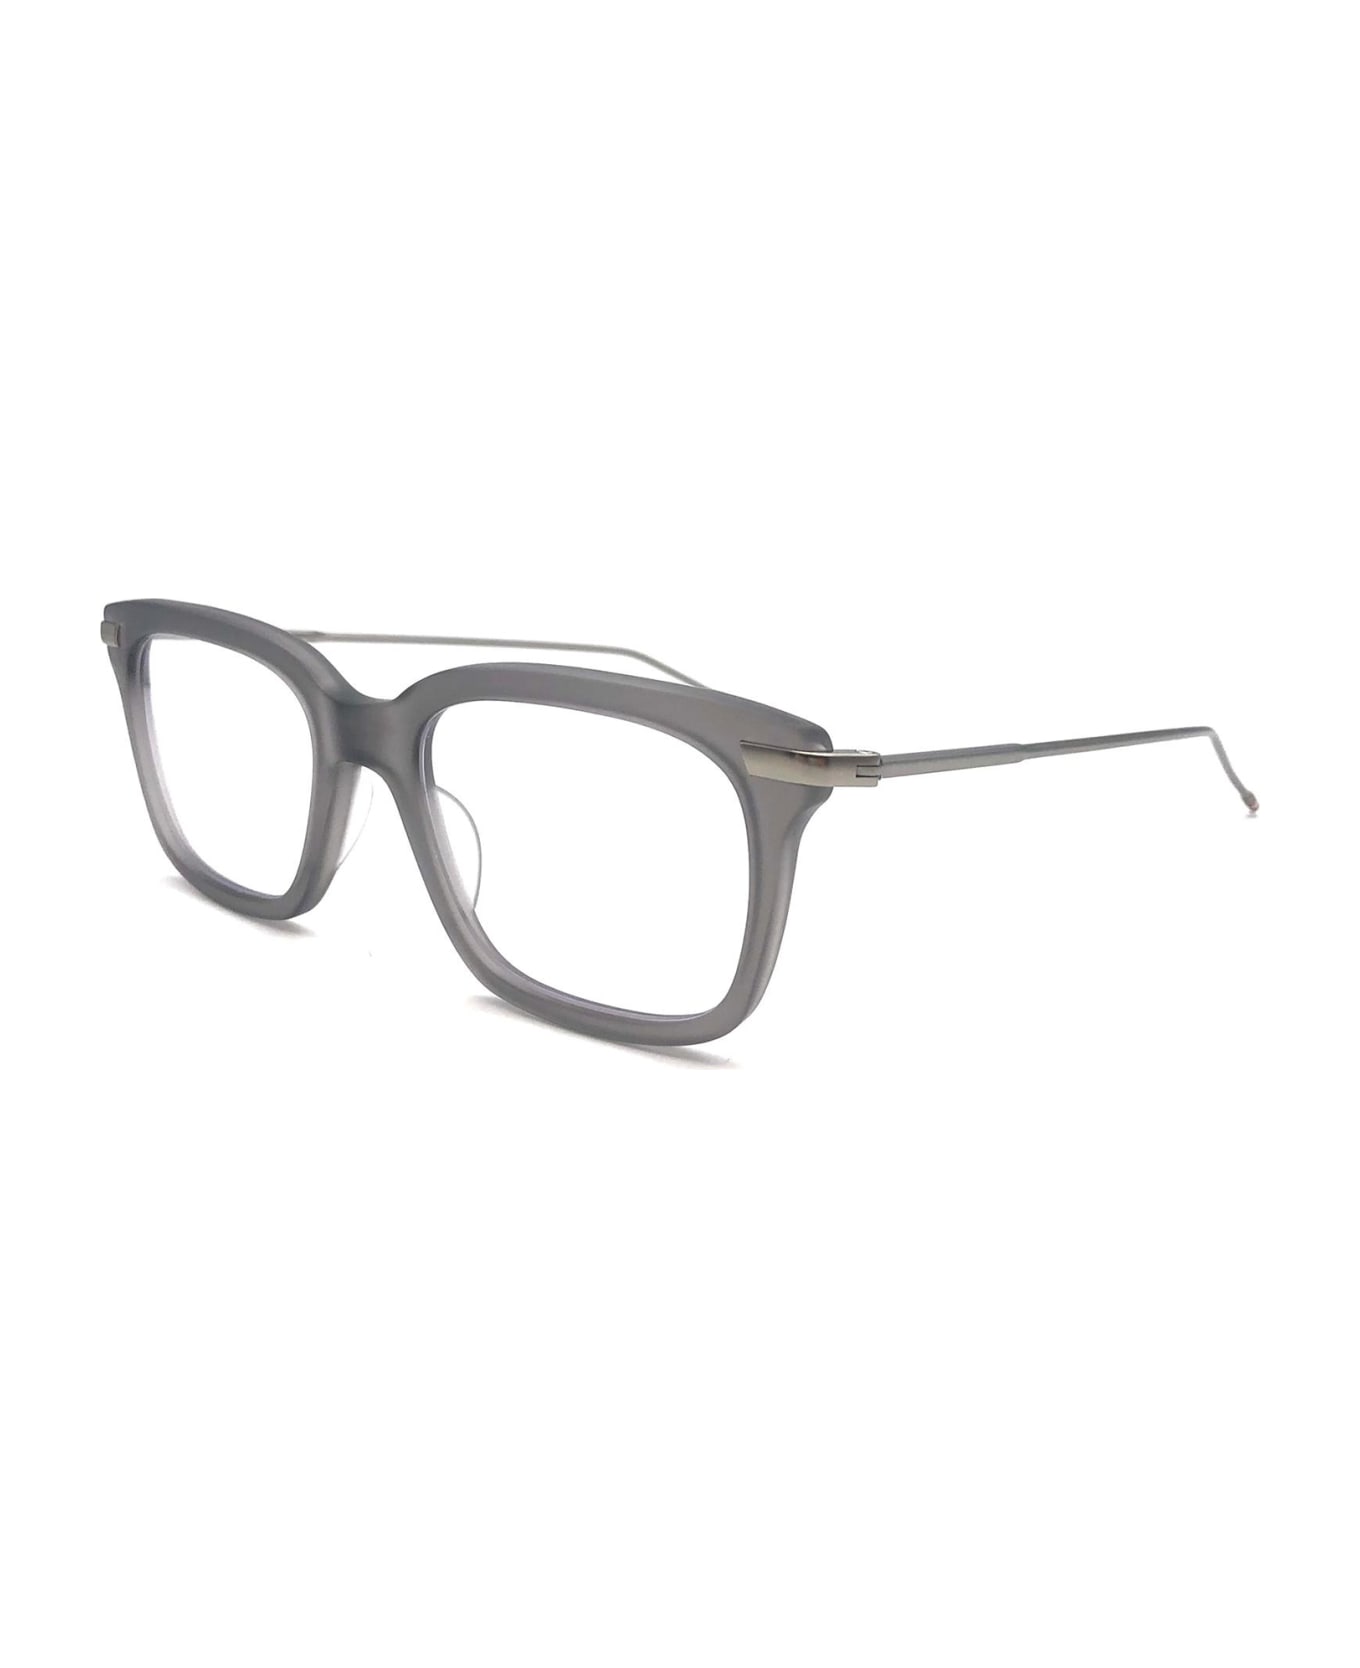 Thom Browne UEO701A/G0003 Eyewear - Light Grey